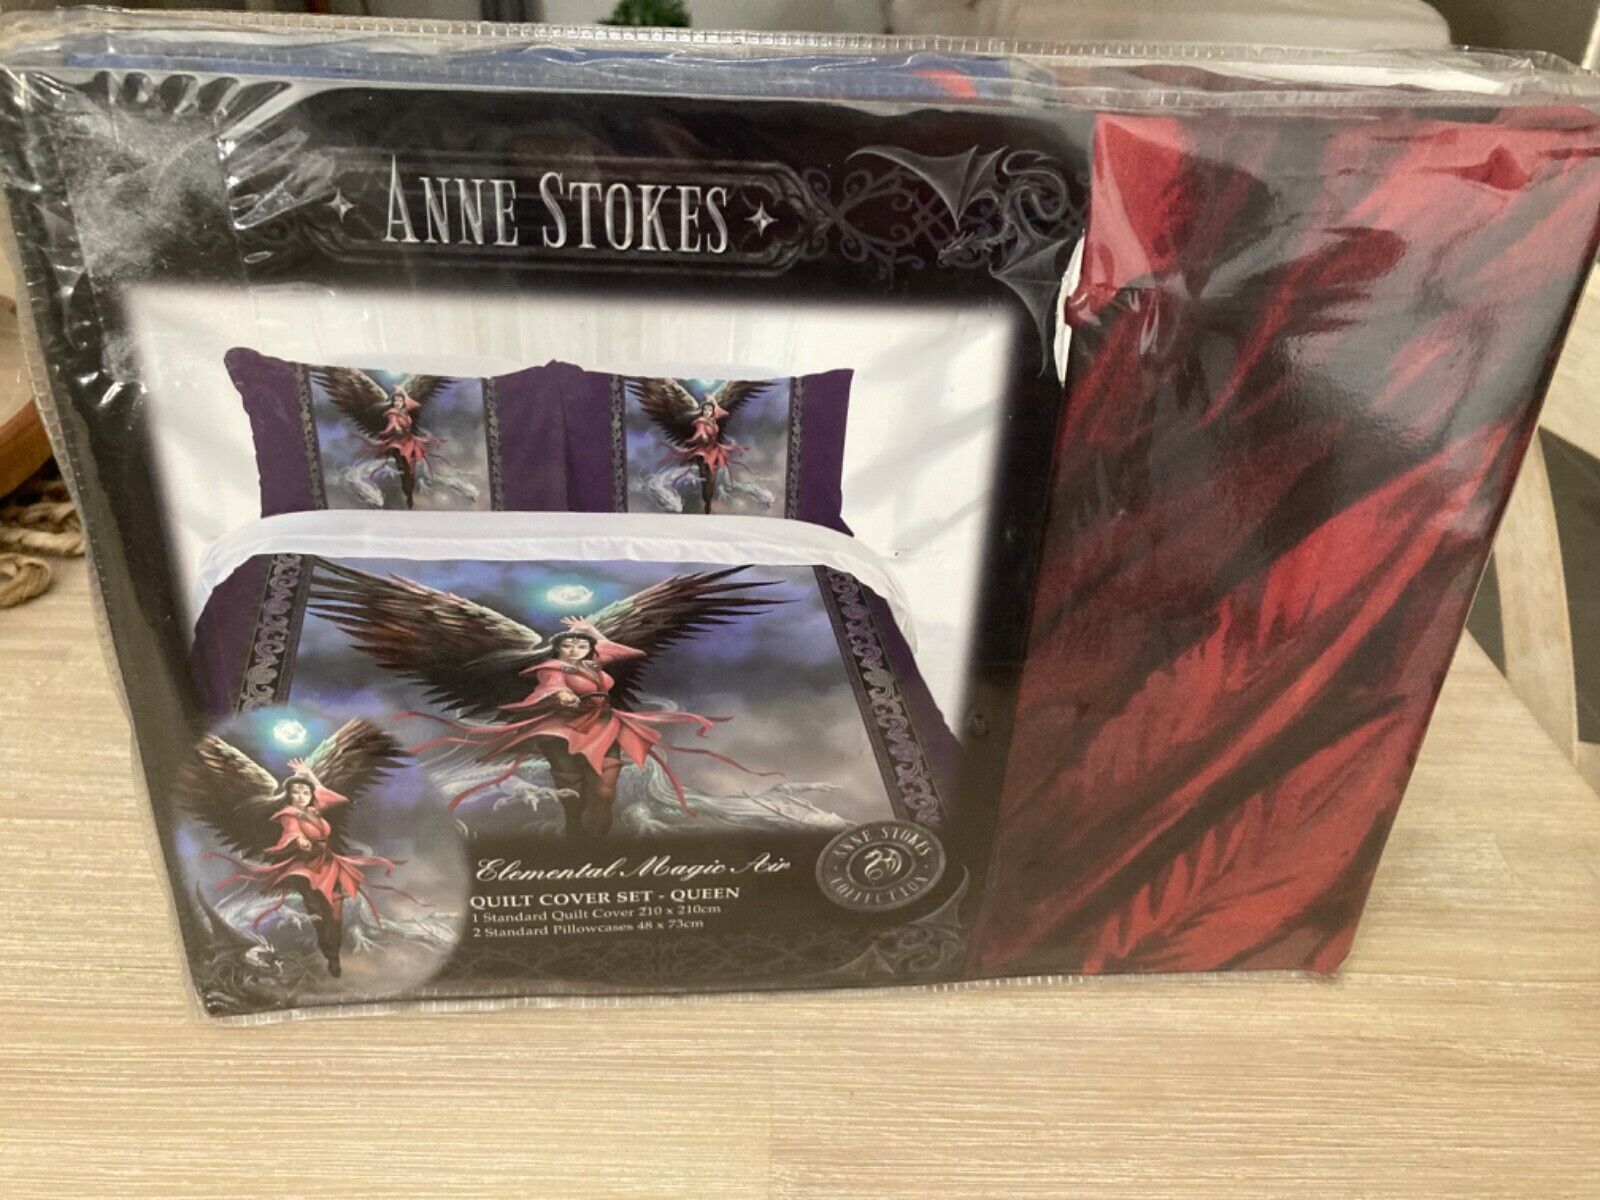 Anne Stokes Elemental Magic Air QUEEN Quilt Cover Set